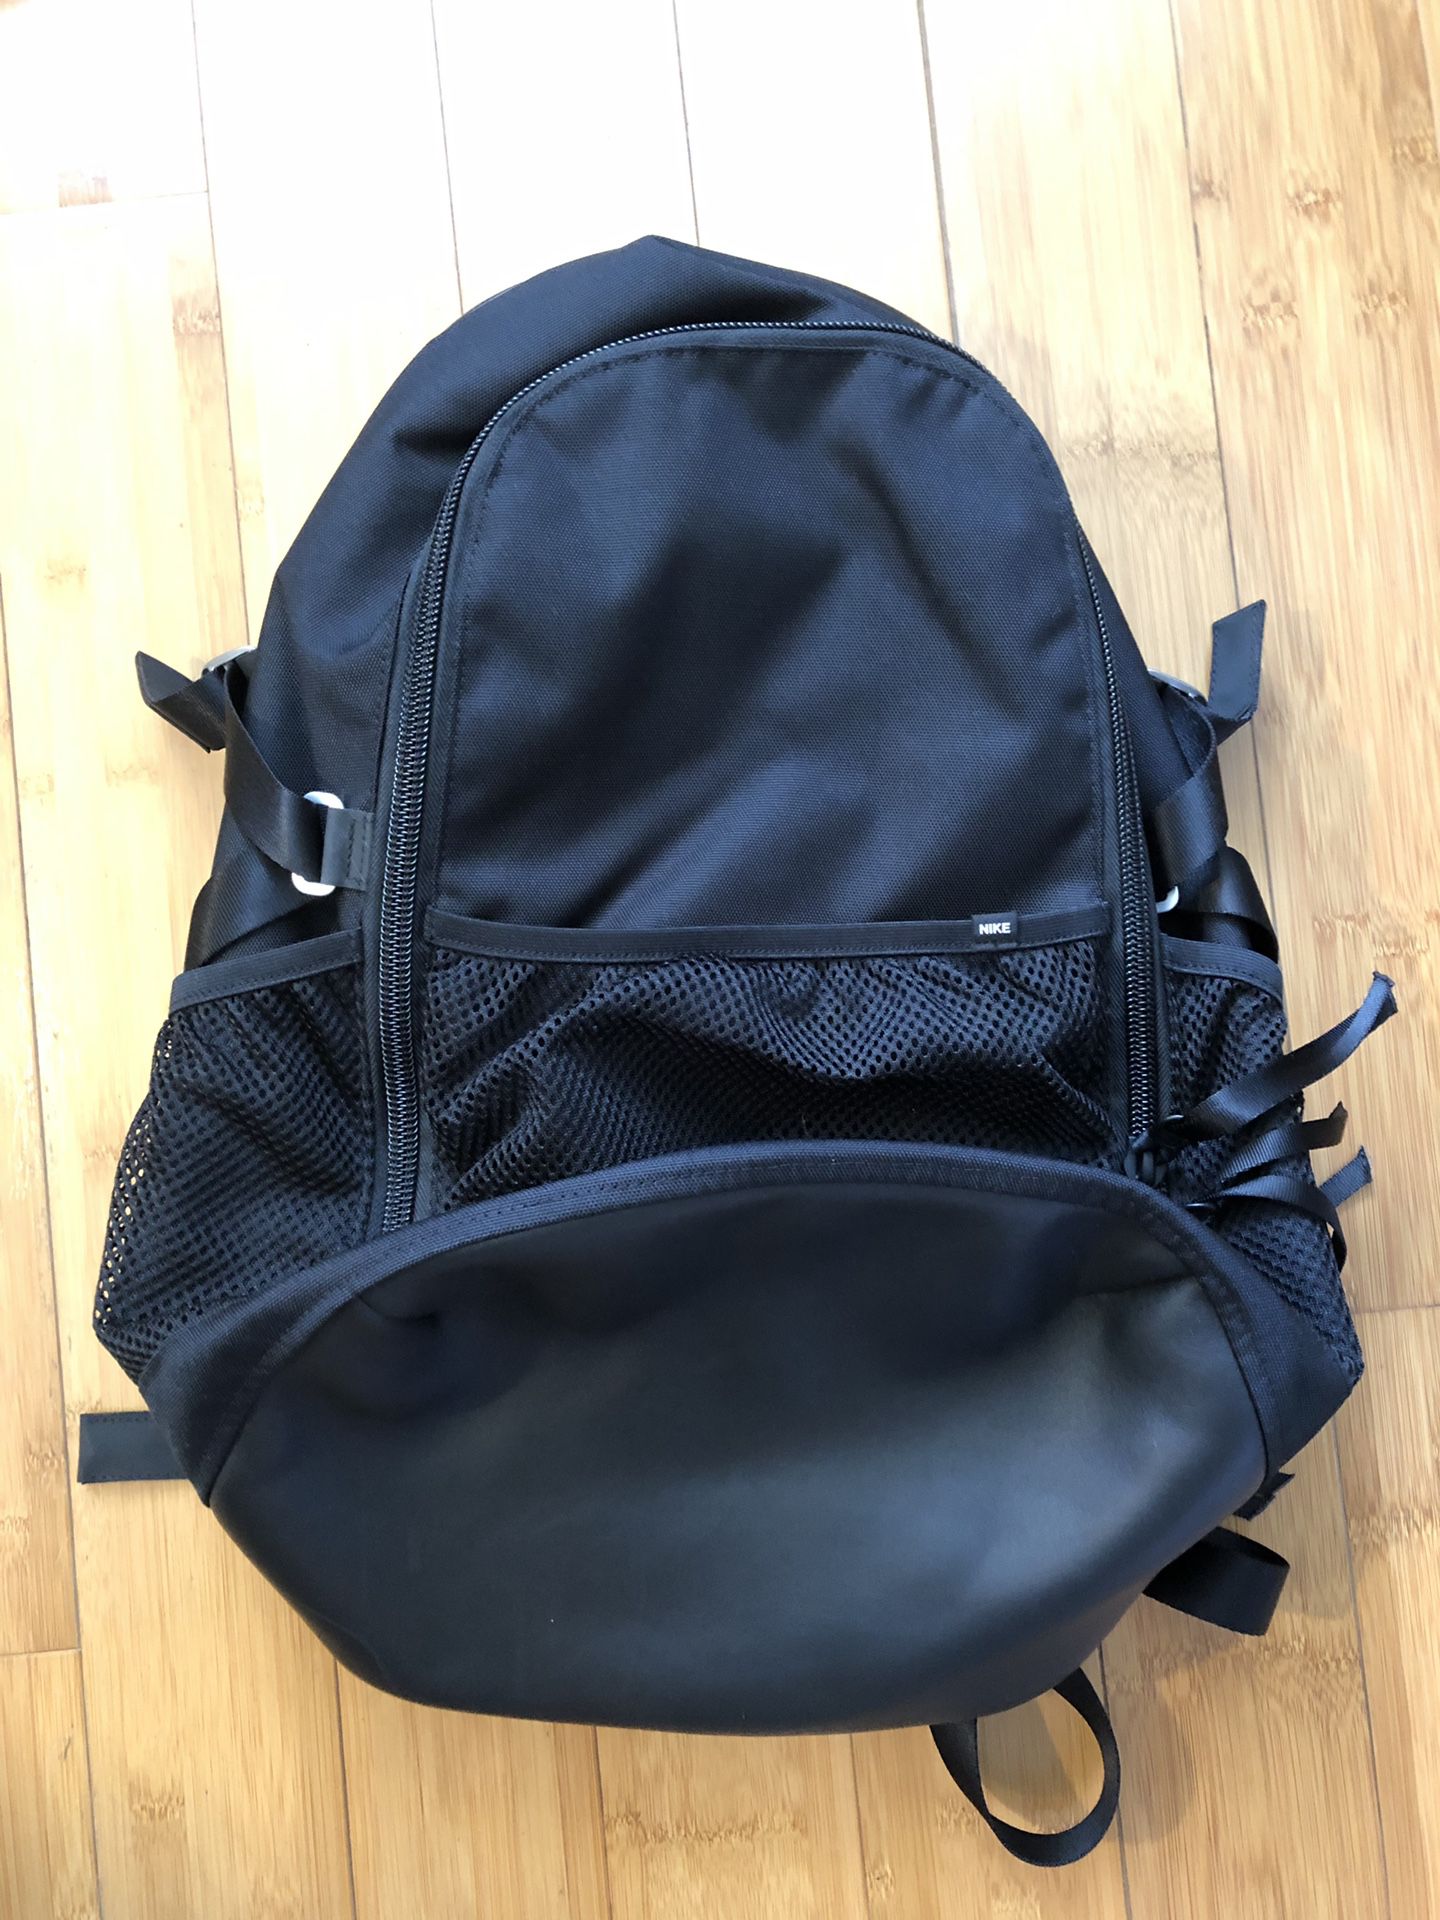 NikeLab Unisex Backpack Black Leather/Mesh